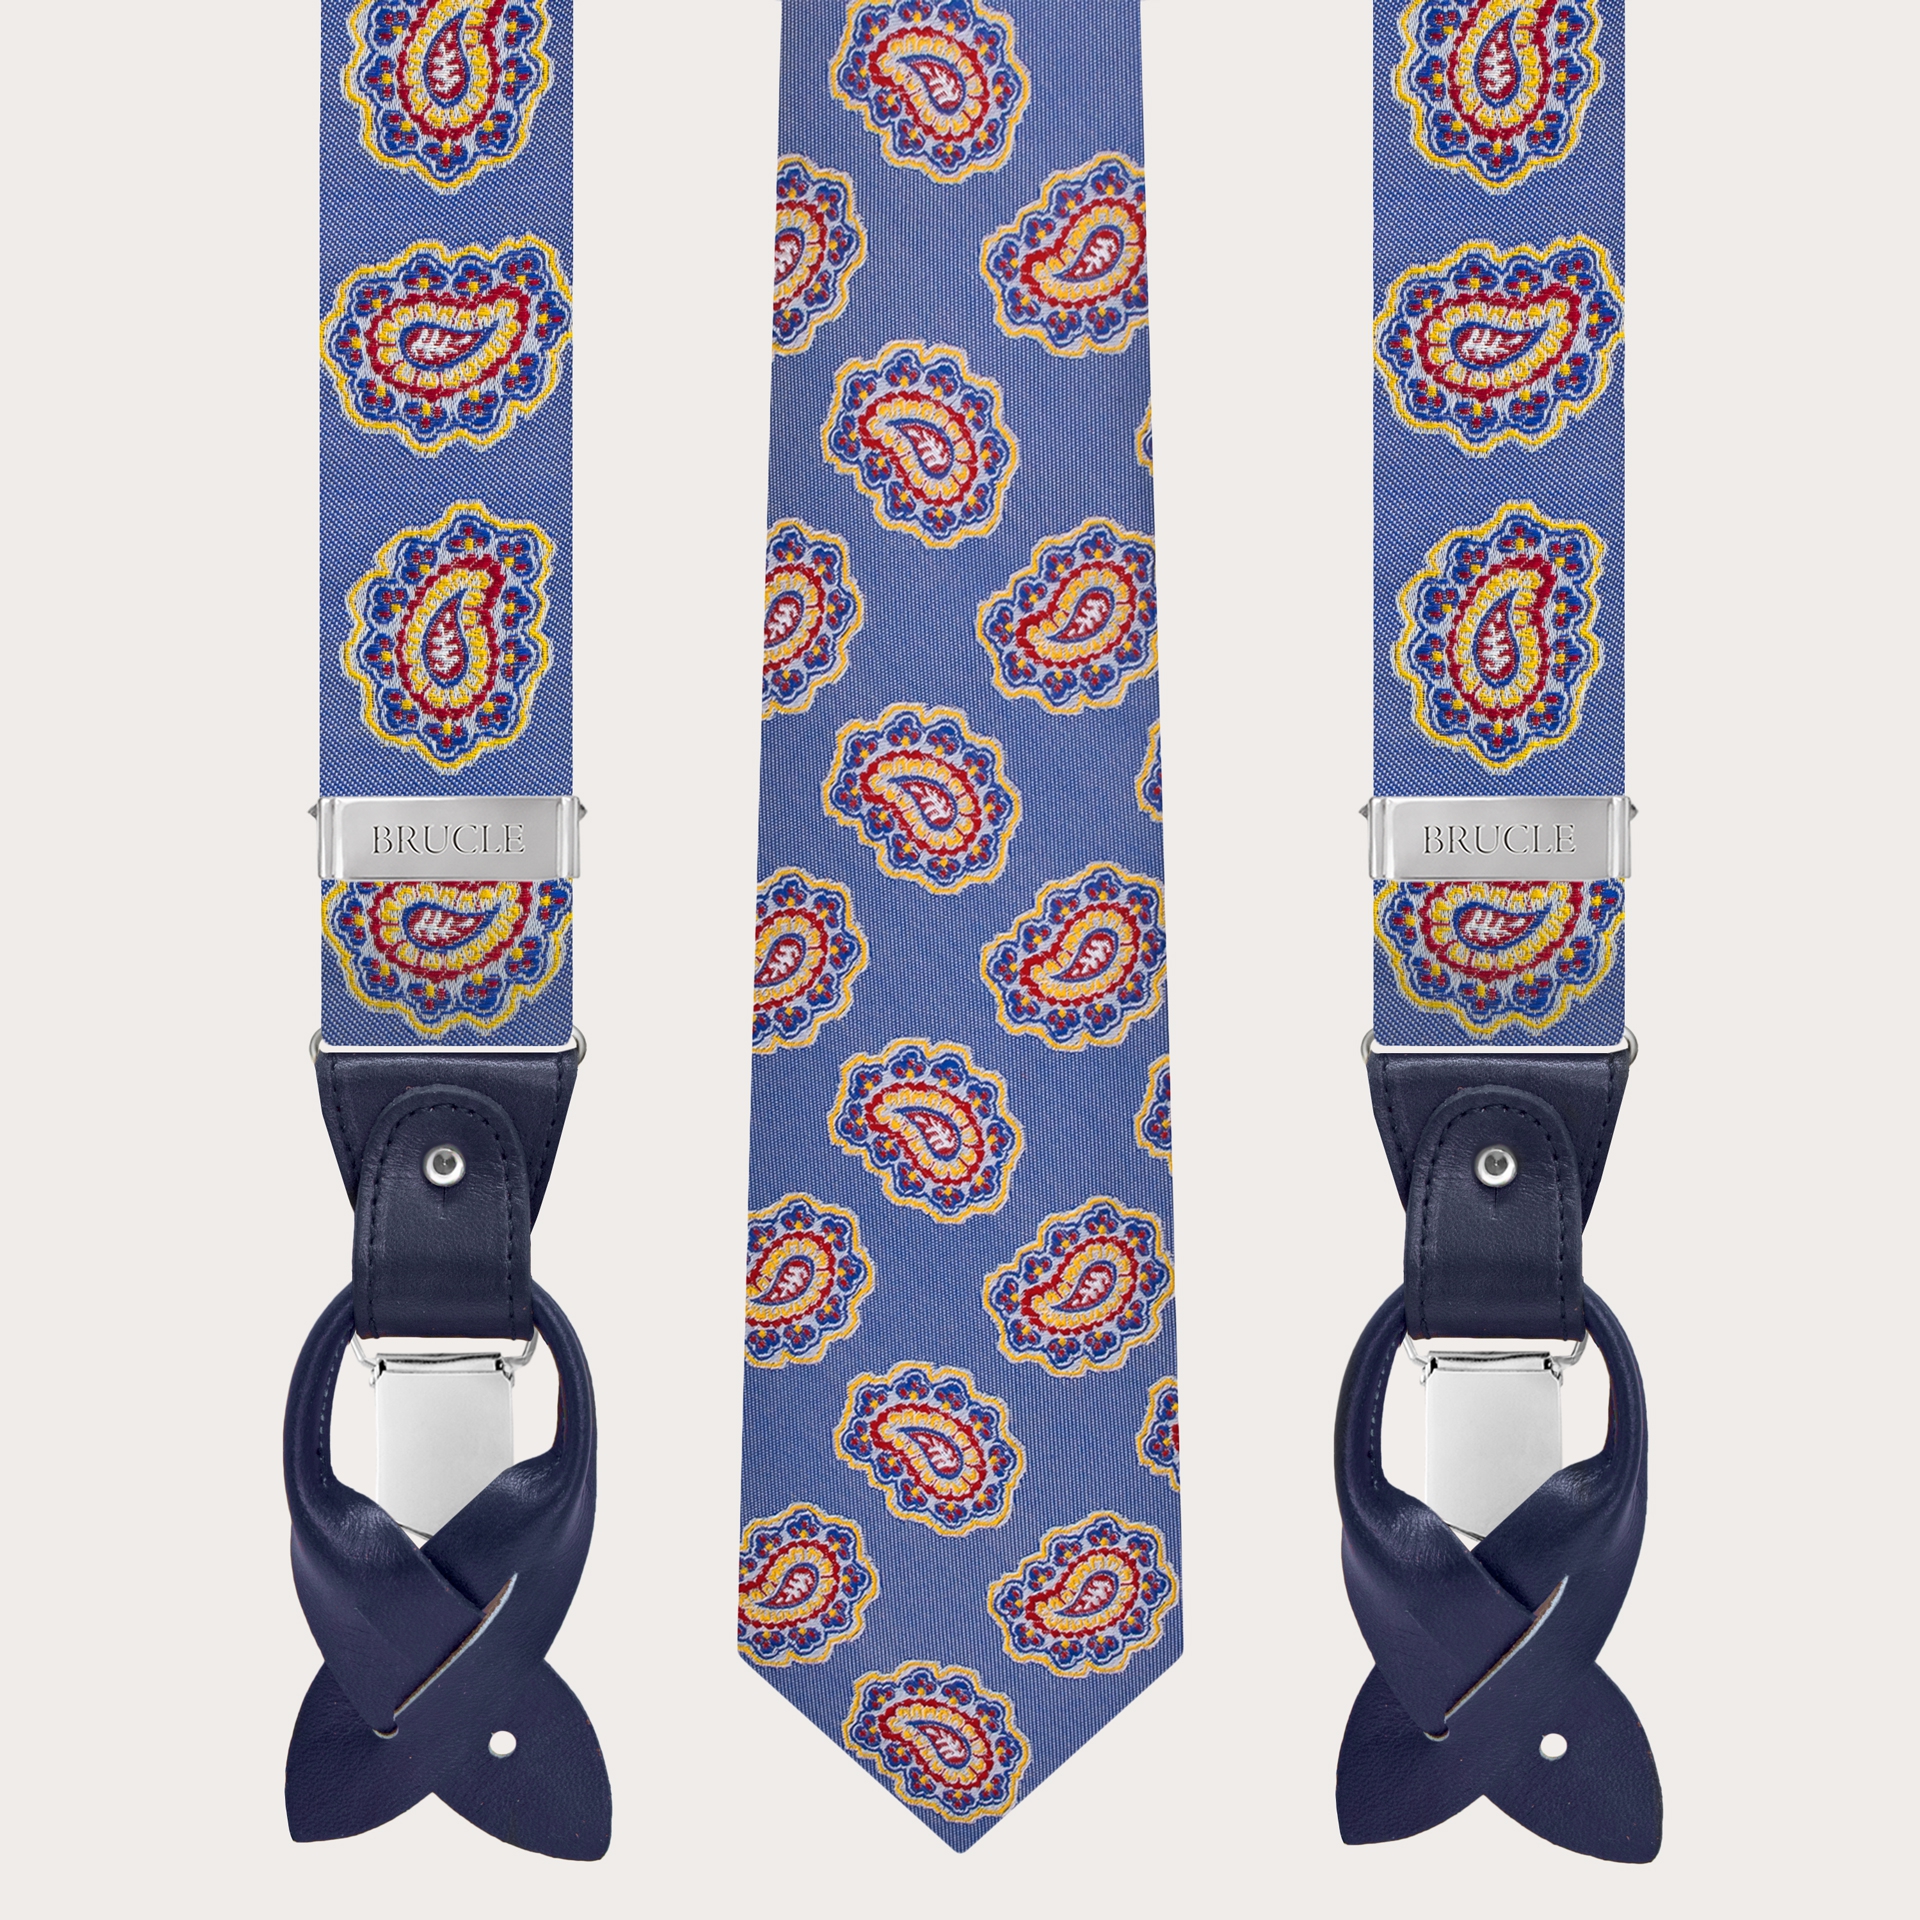 Tirantes y corbata coordinados en seda, patrón blanco y azul